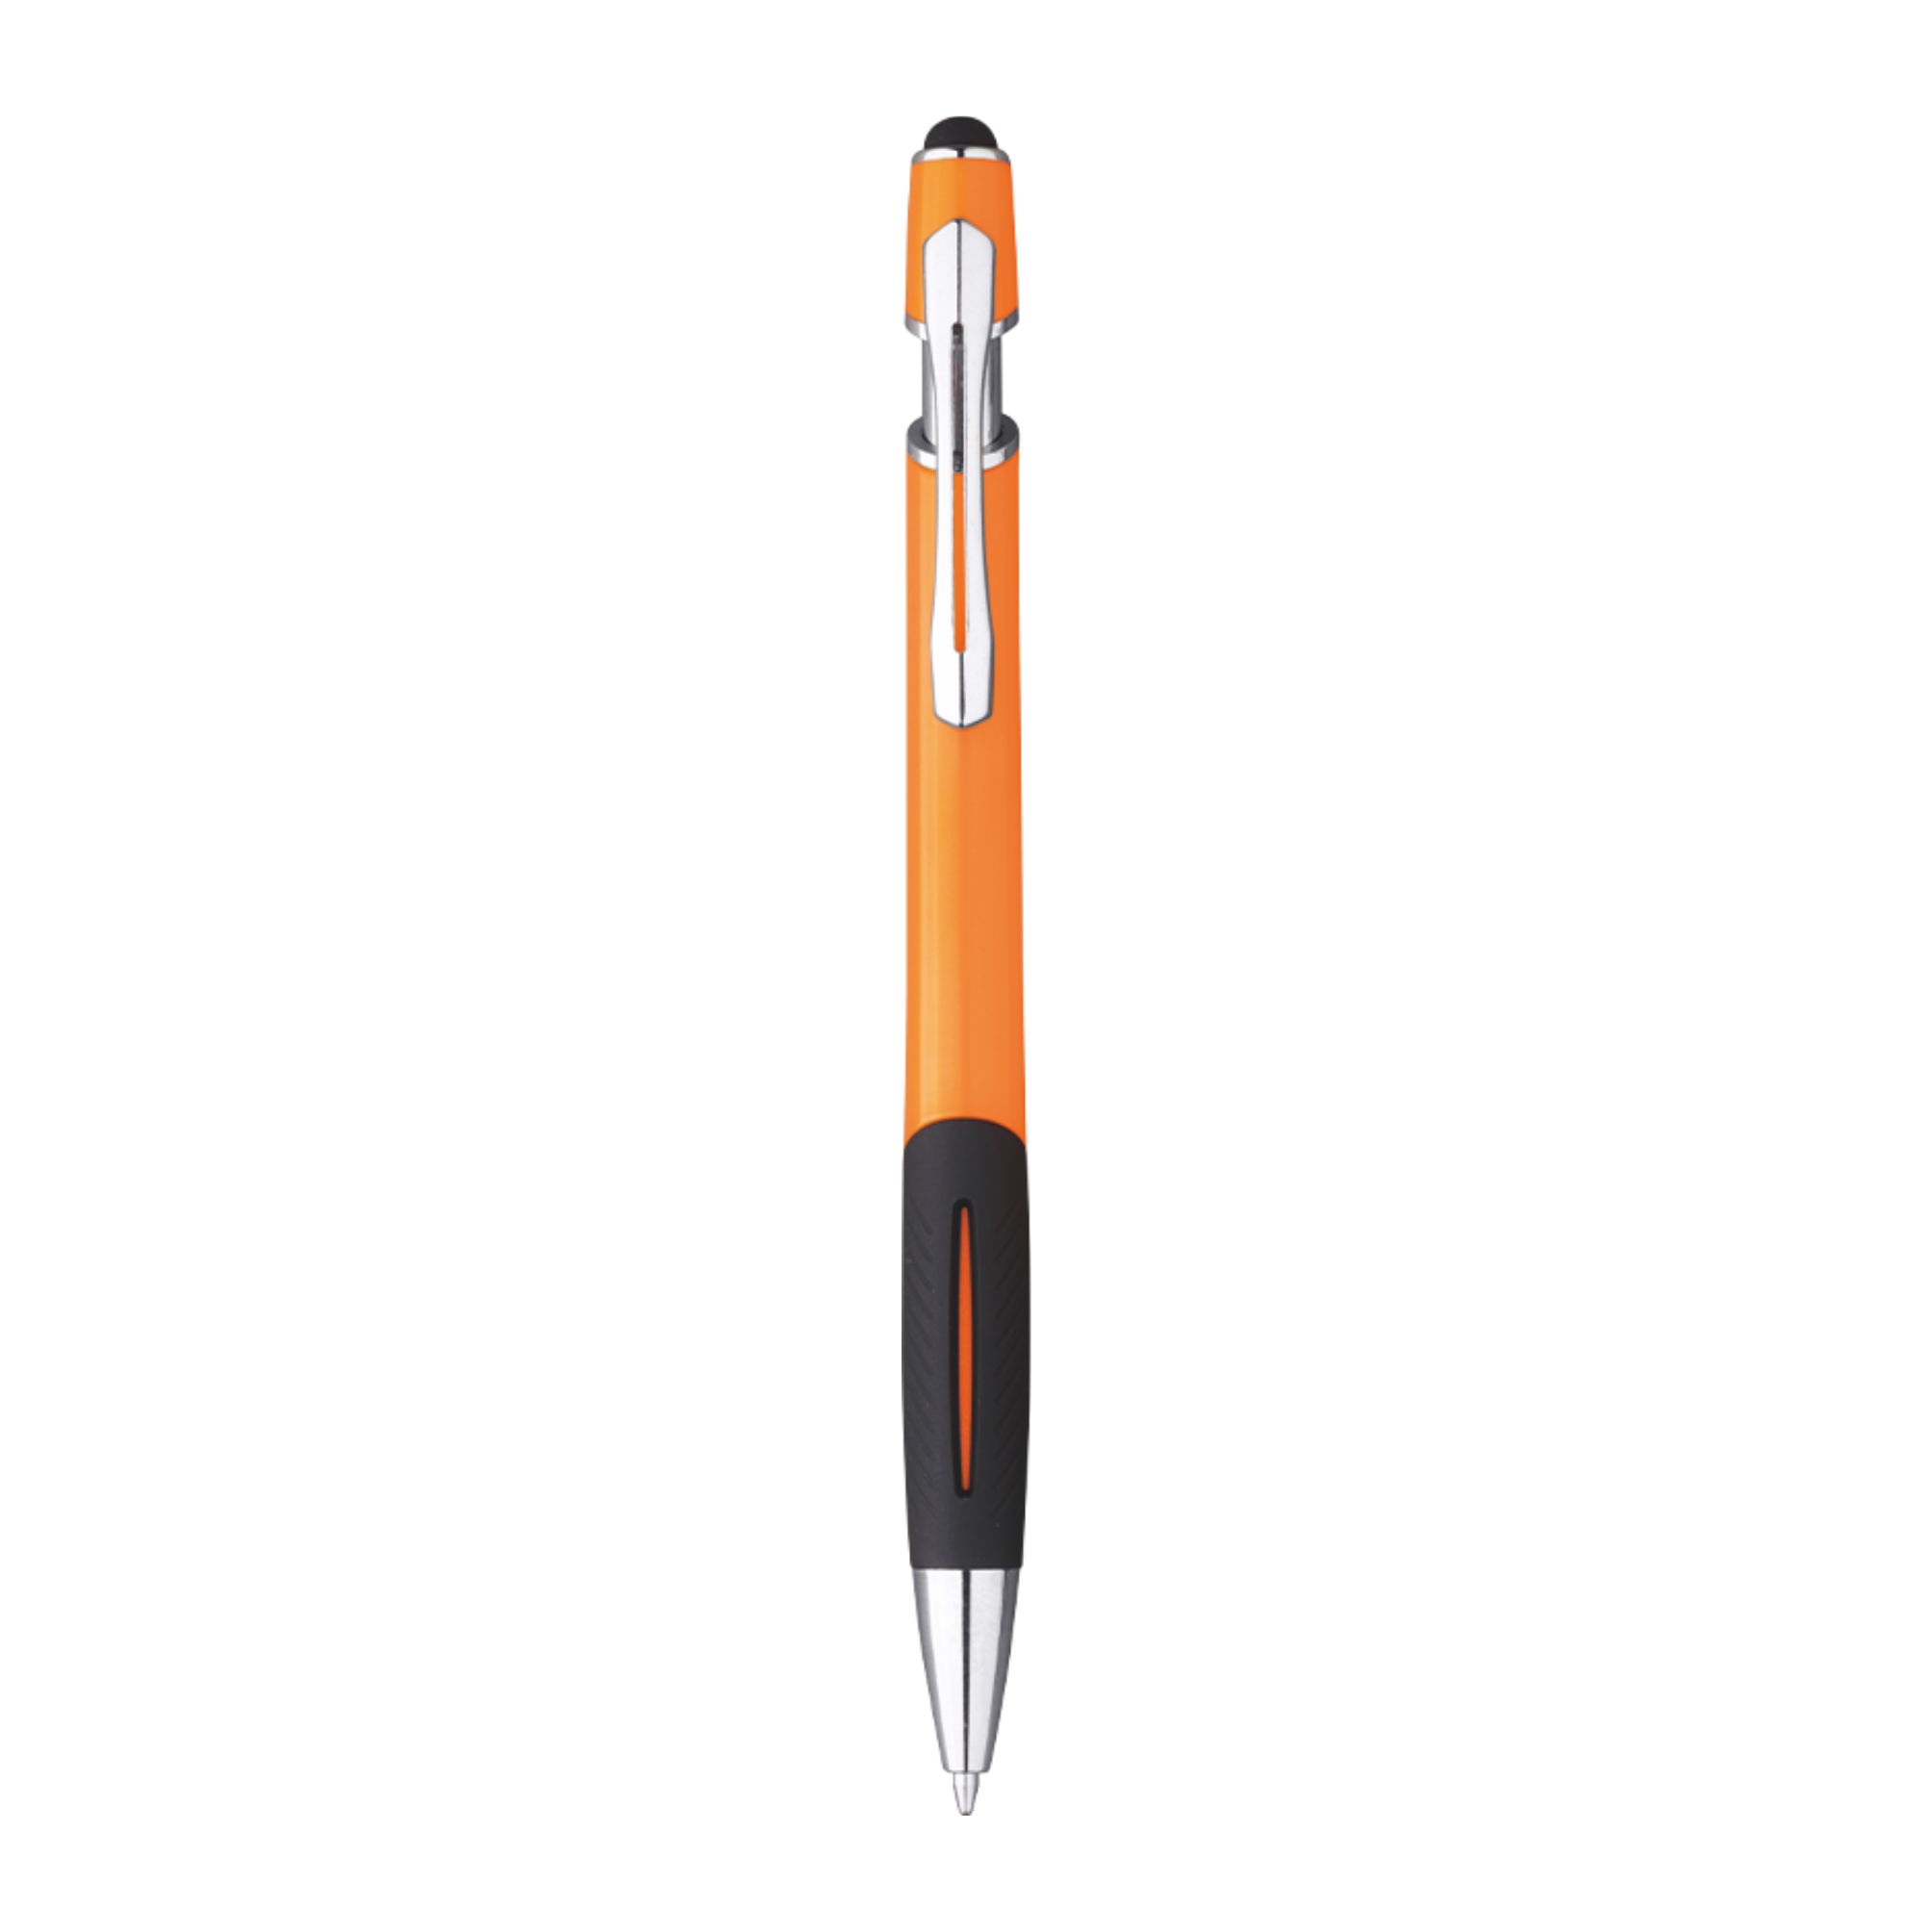 5051-tazio-penna-sfera-con-touch-arancio.jpg